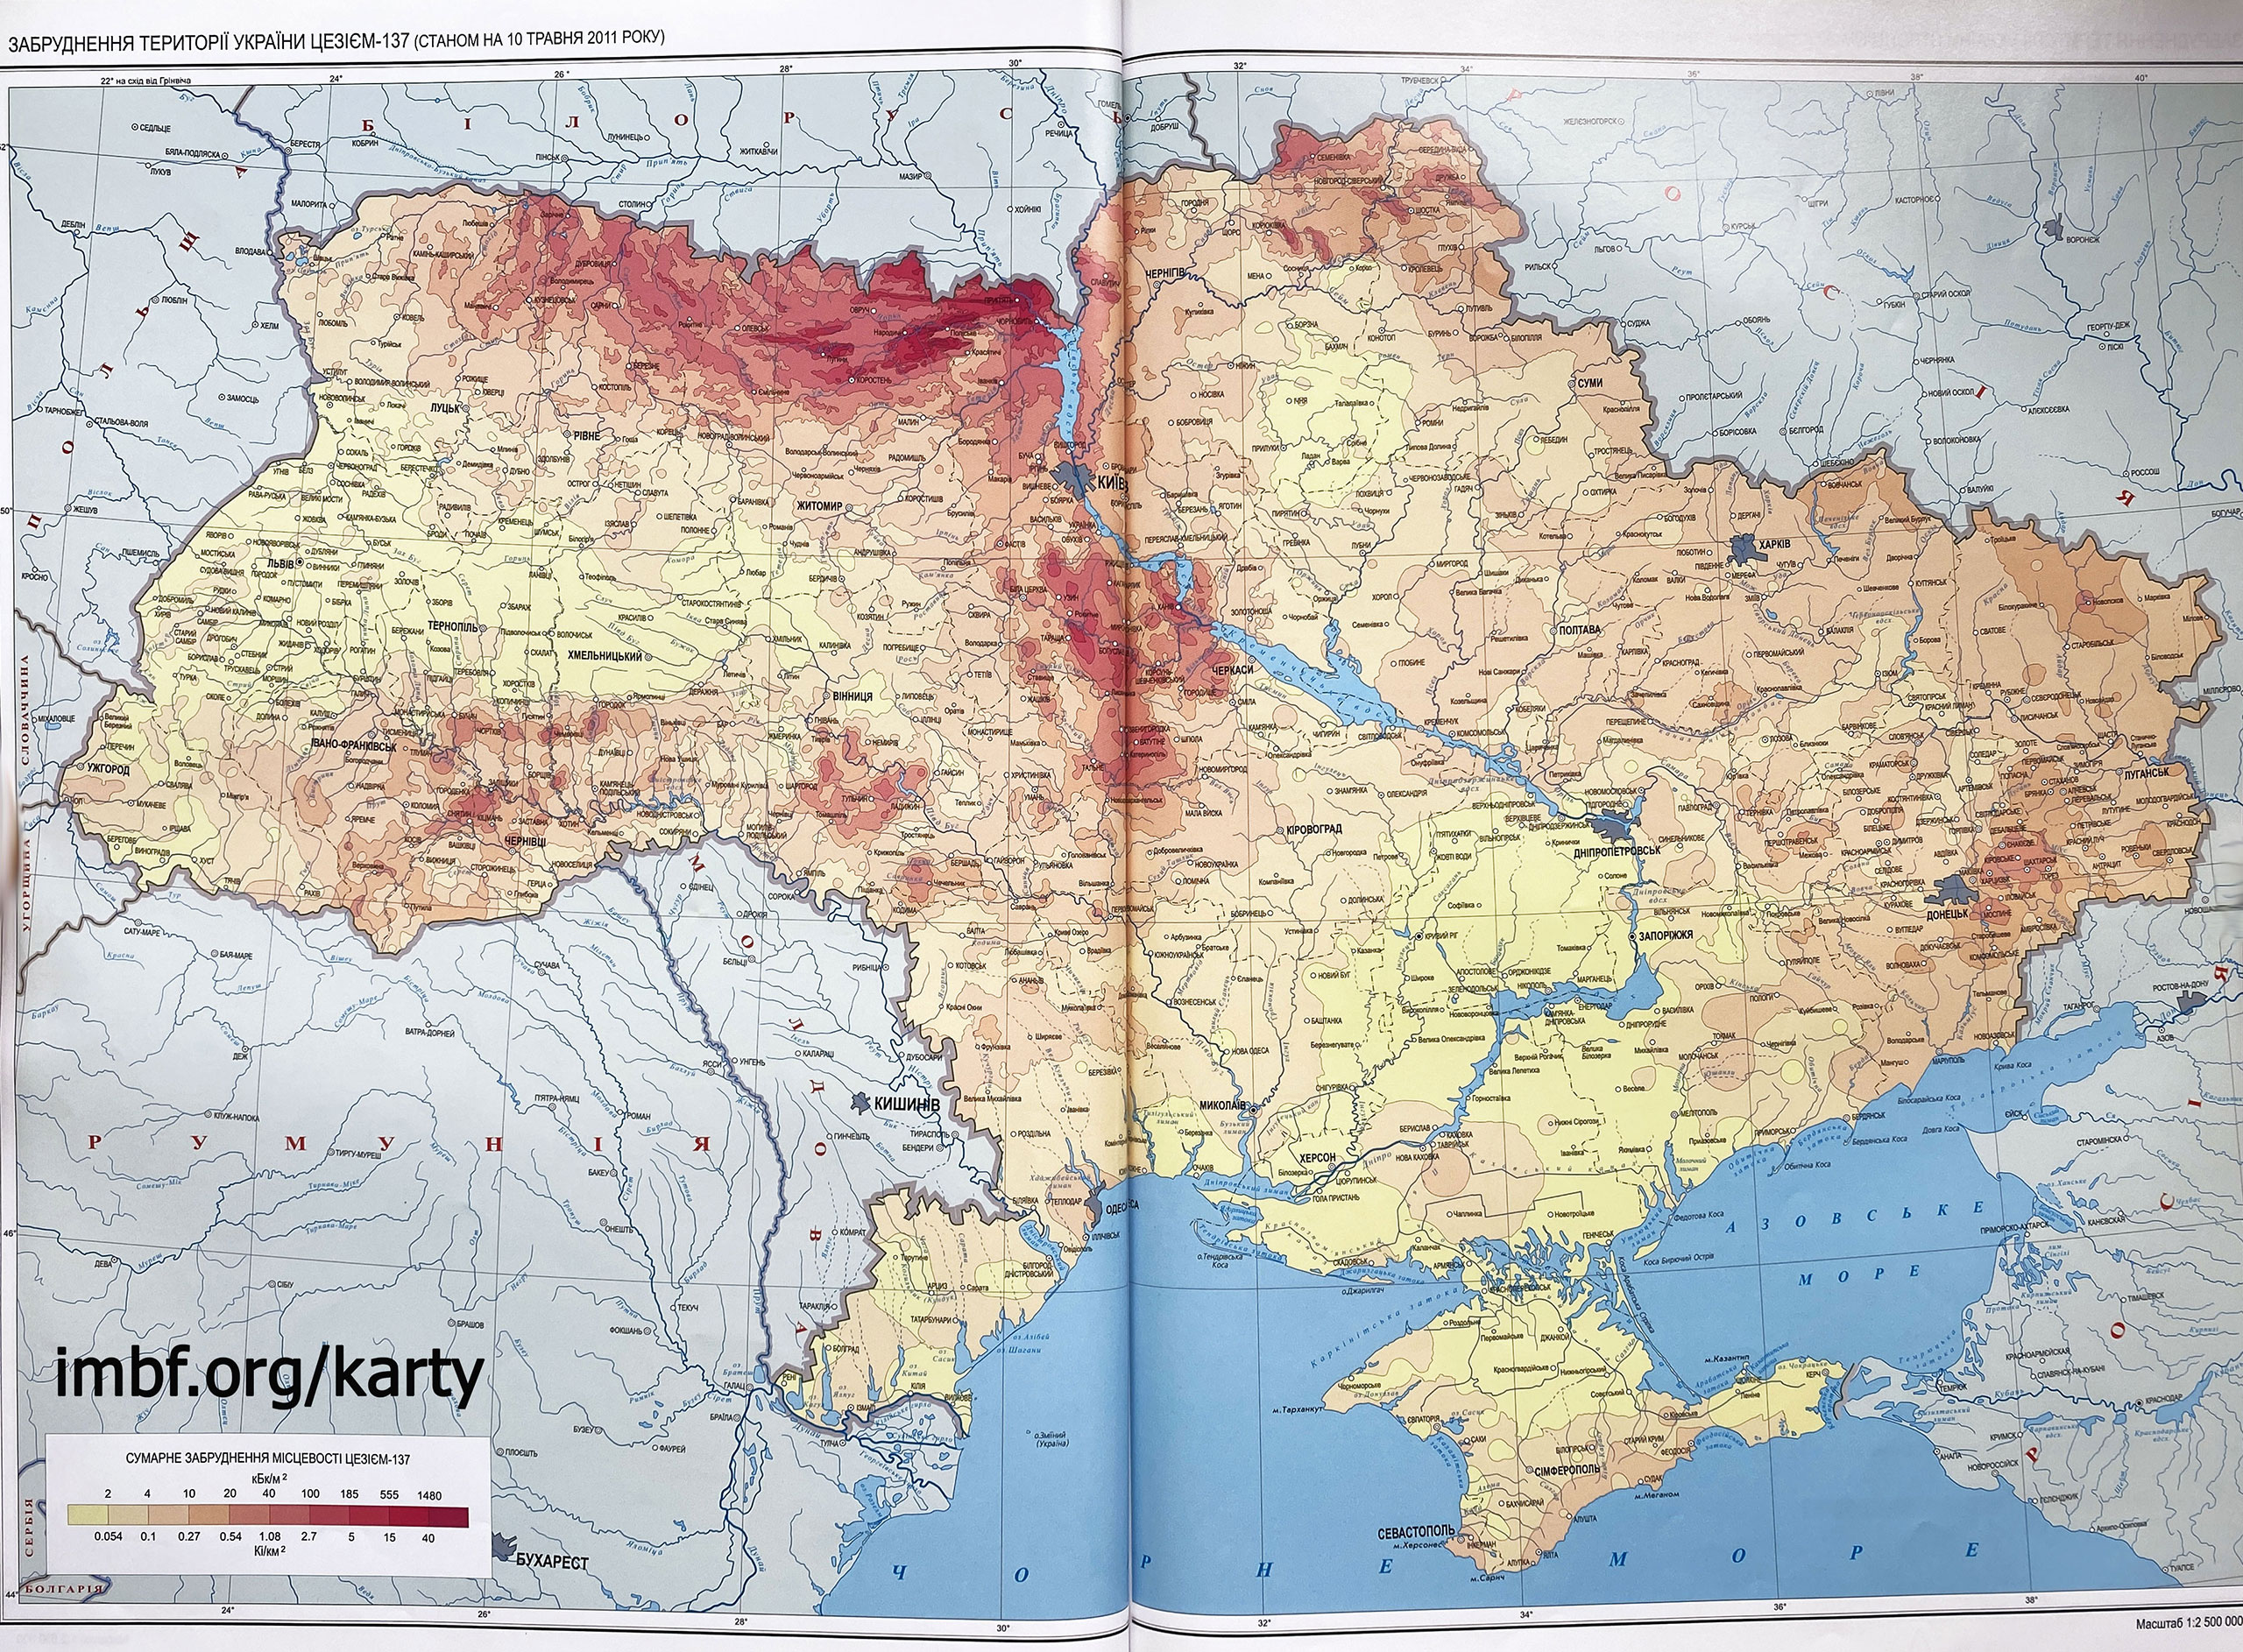 Загрязнение территории Украины цезием-137 (по состоянию на 10 мая 2011 года)